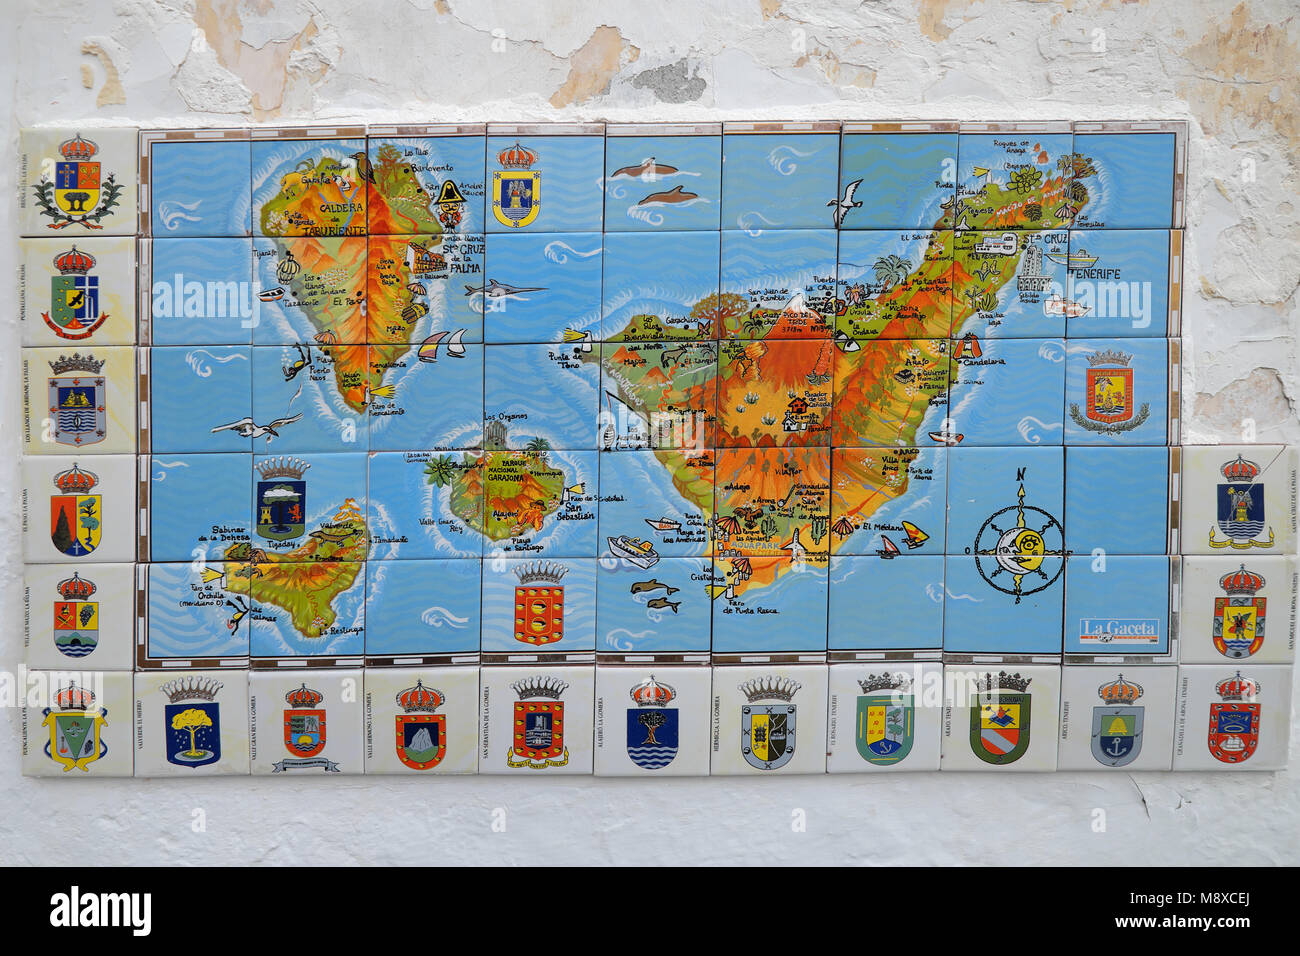 Une carte tenerife du carrelage dans les îles Canaries de l'Espagne Banque D'Images